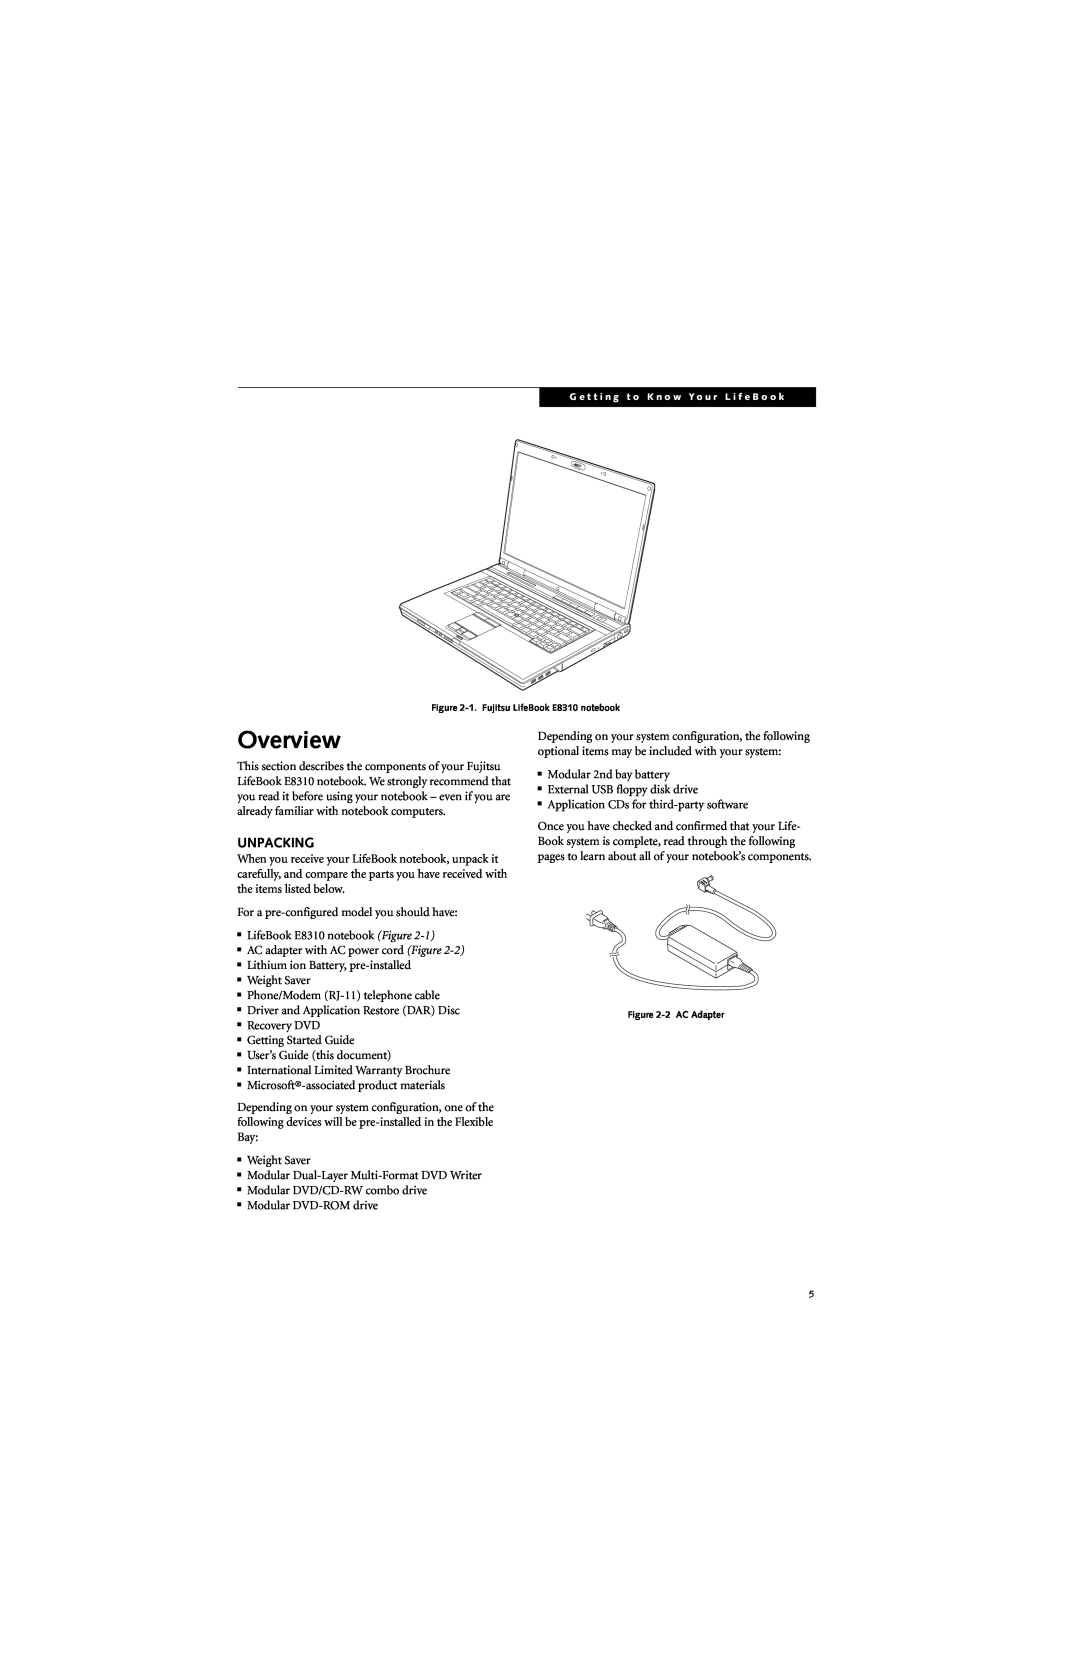 Fujitsu E8310 manual Overview, Unpacking 